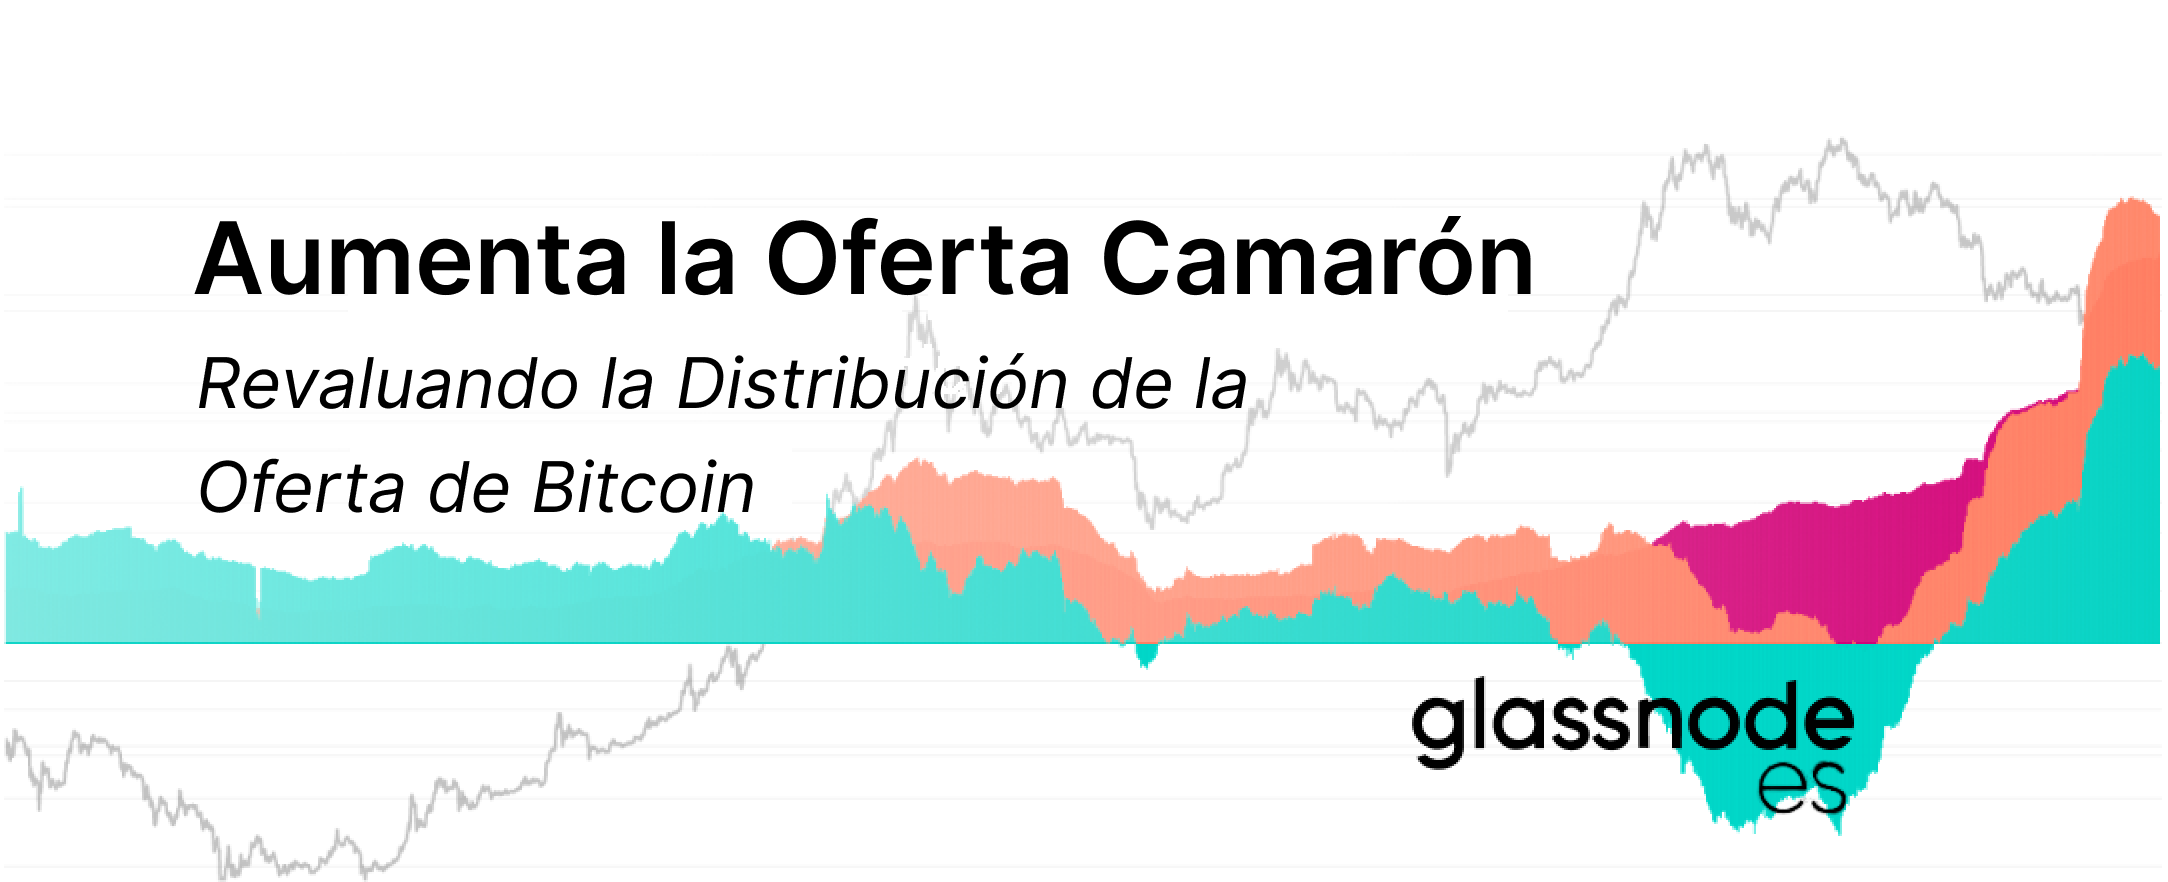 Aumenta la Oferta de los Camarones: Revaluando la Distribución de la Oferta de Bitcoin